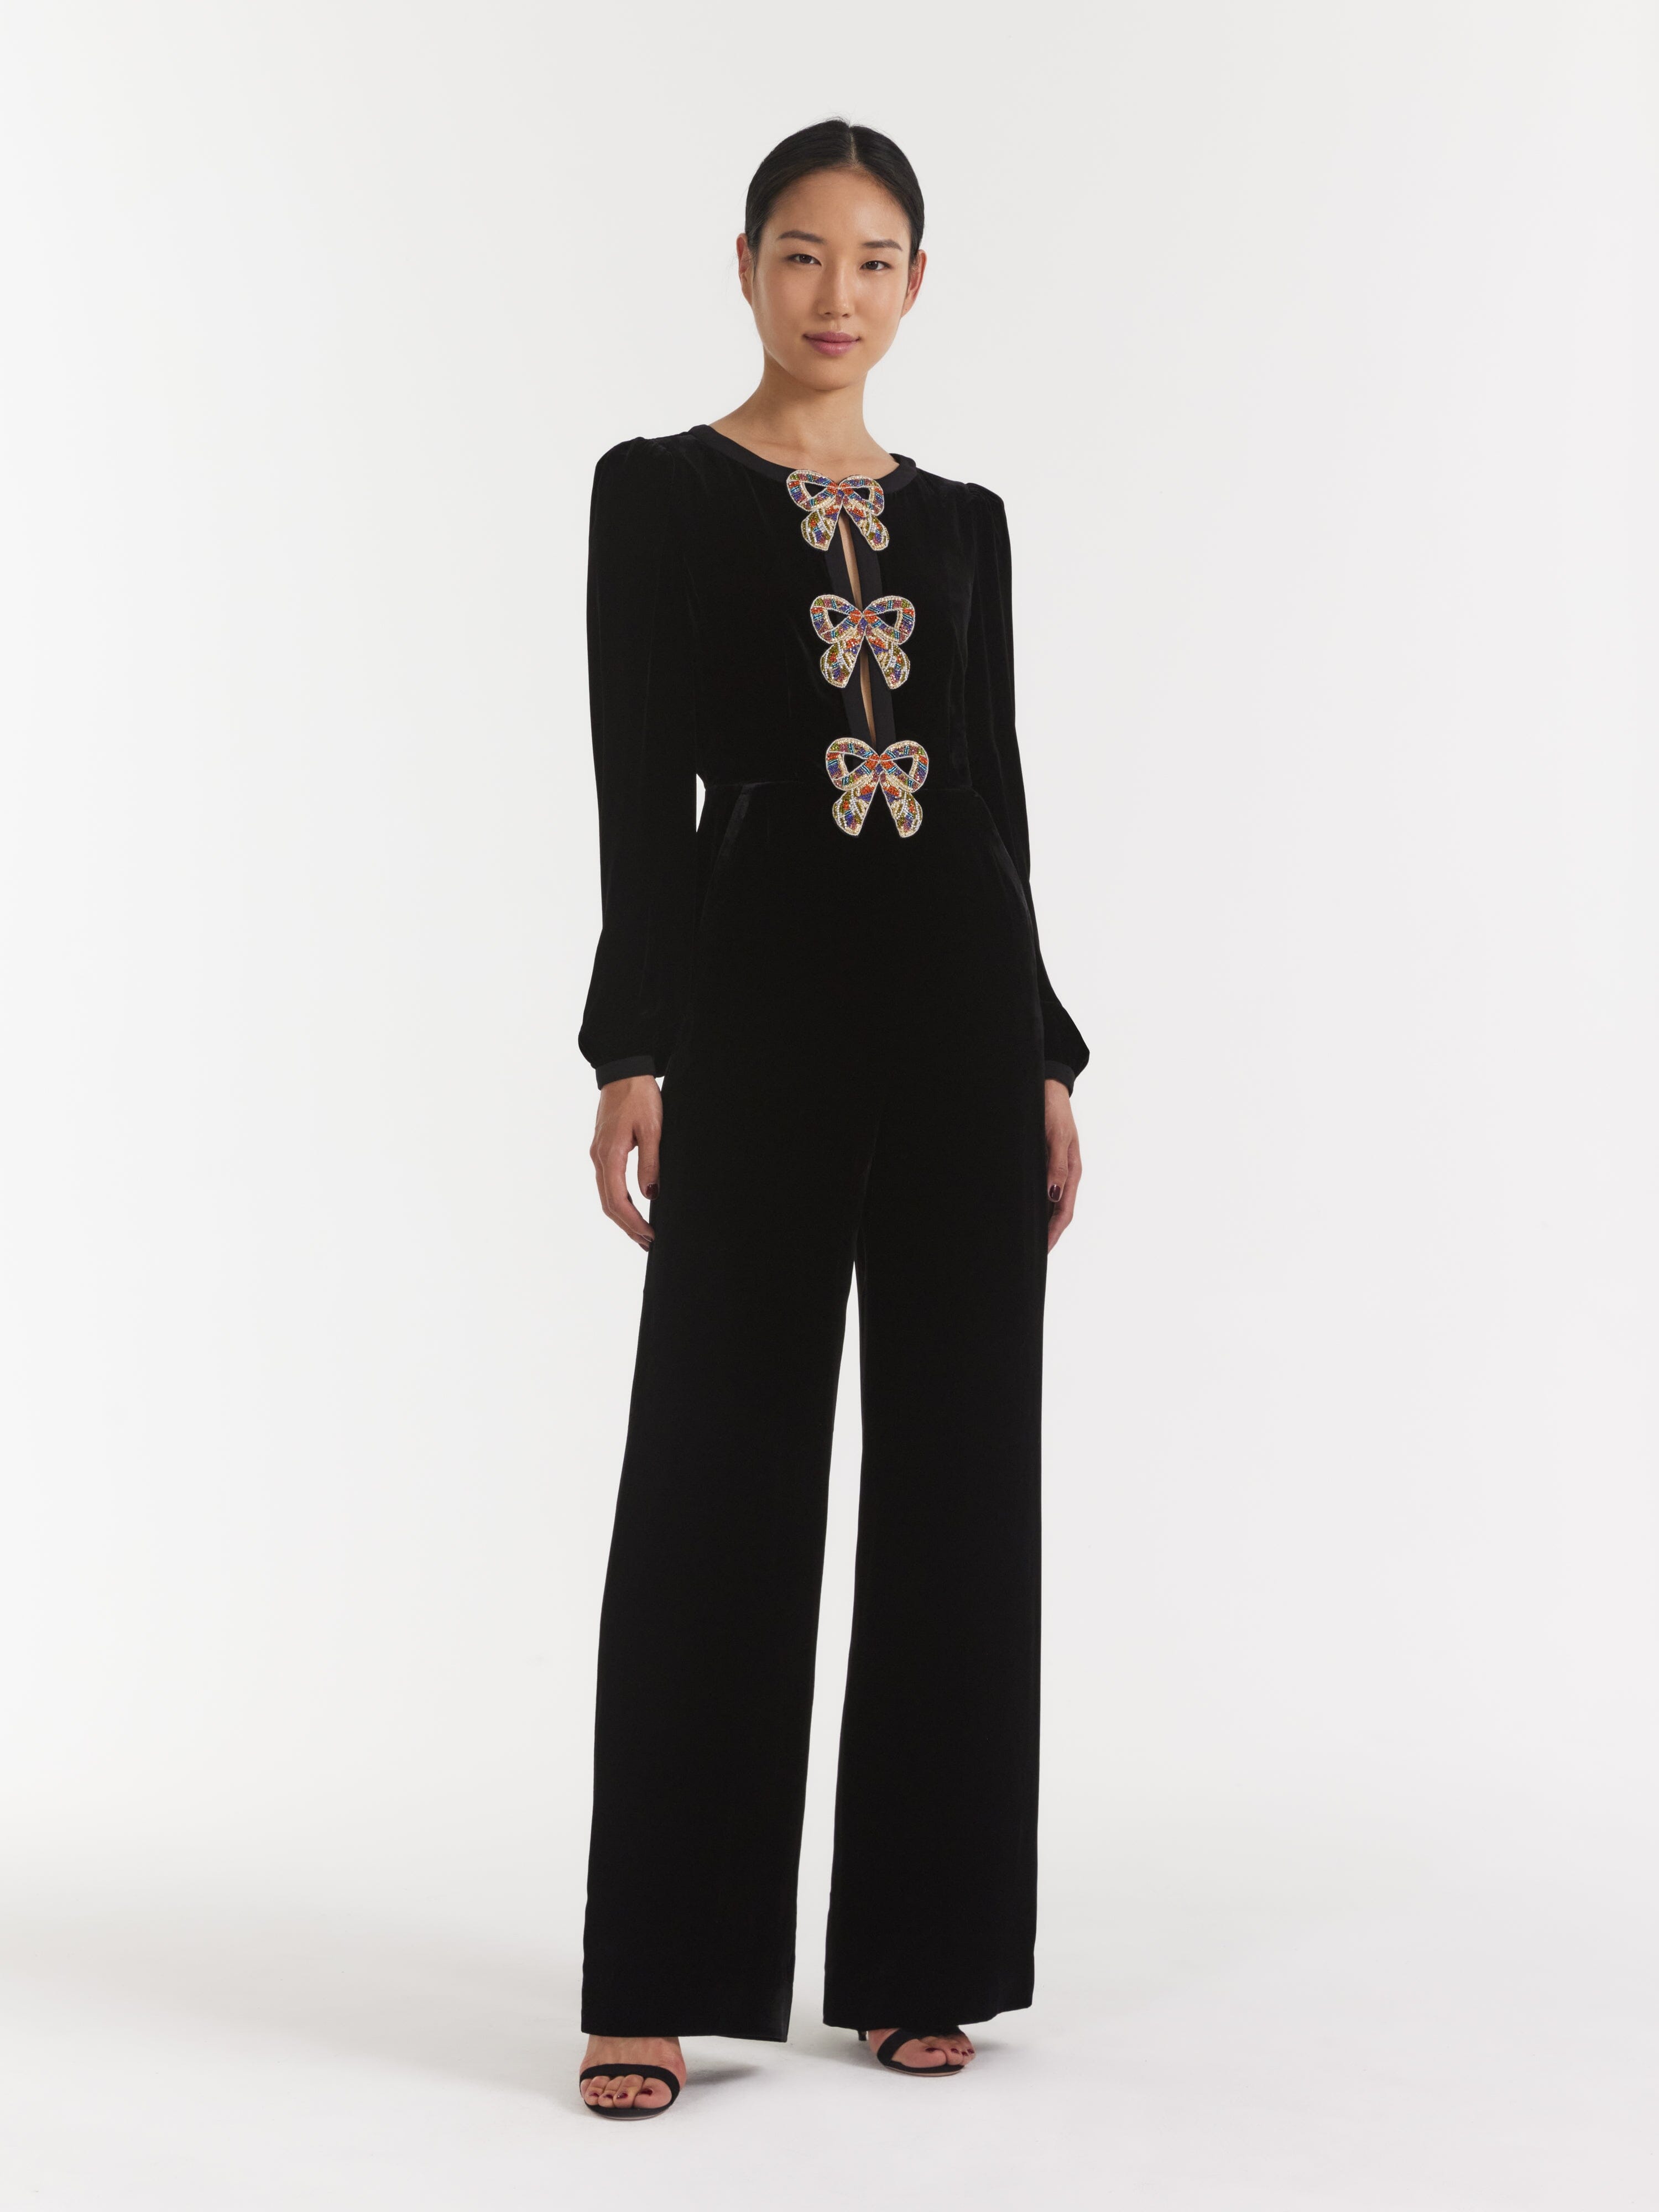 Nodress Original black velvet bow decorated lace jumpsuit camisole –  SoulWears